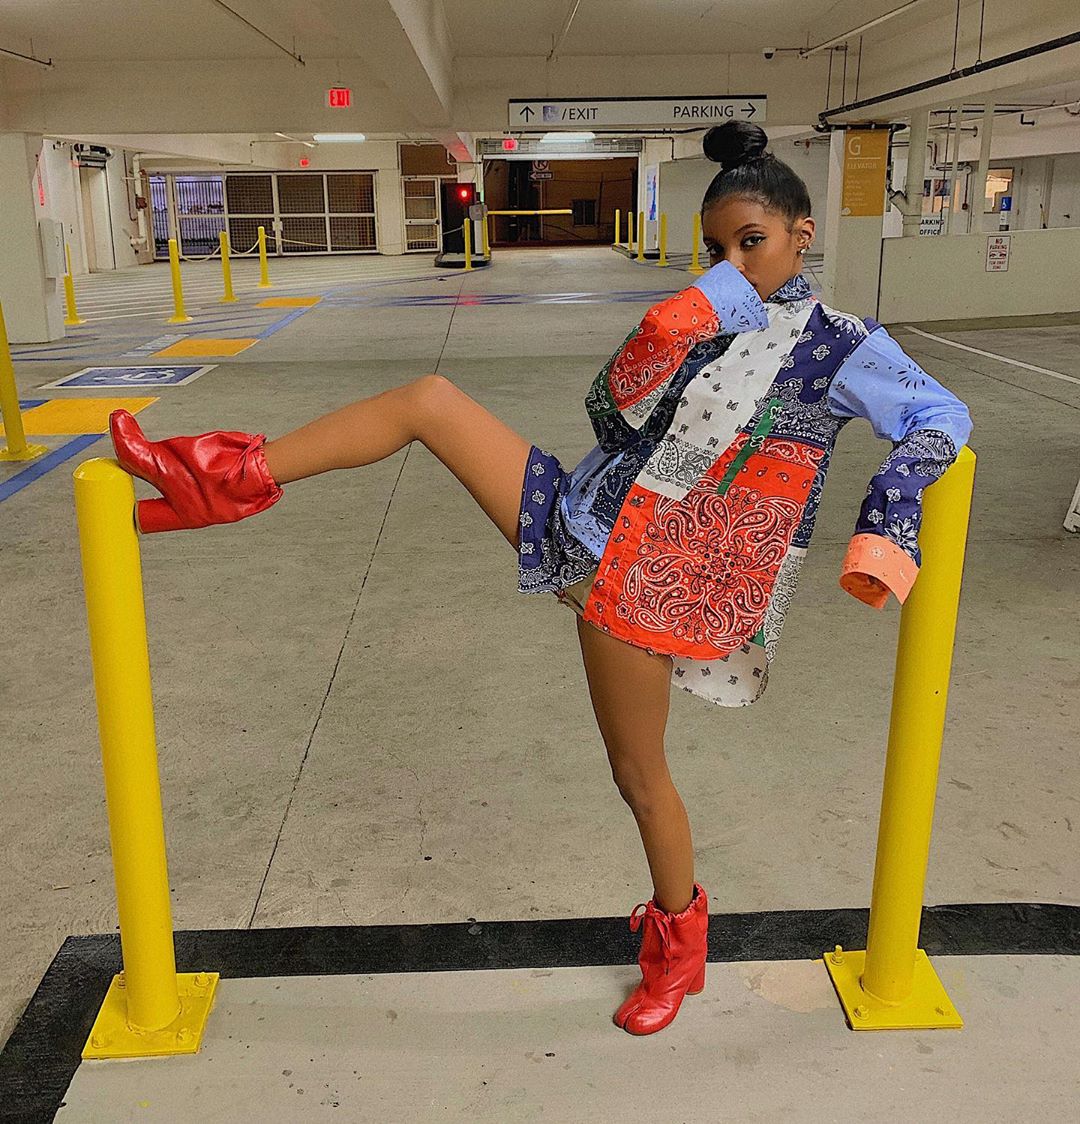 30 Black Fashionistas To Follow On Instagram